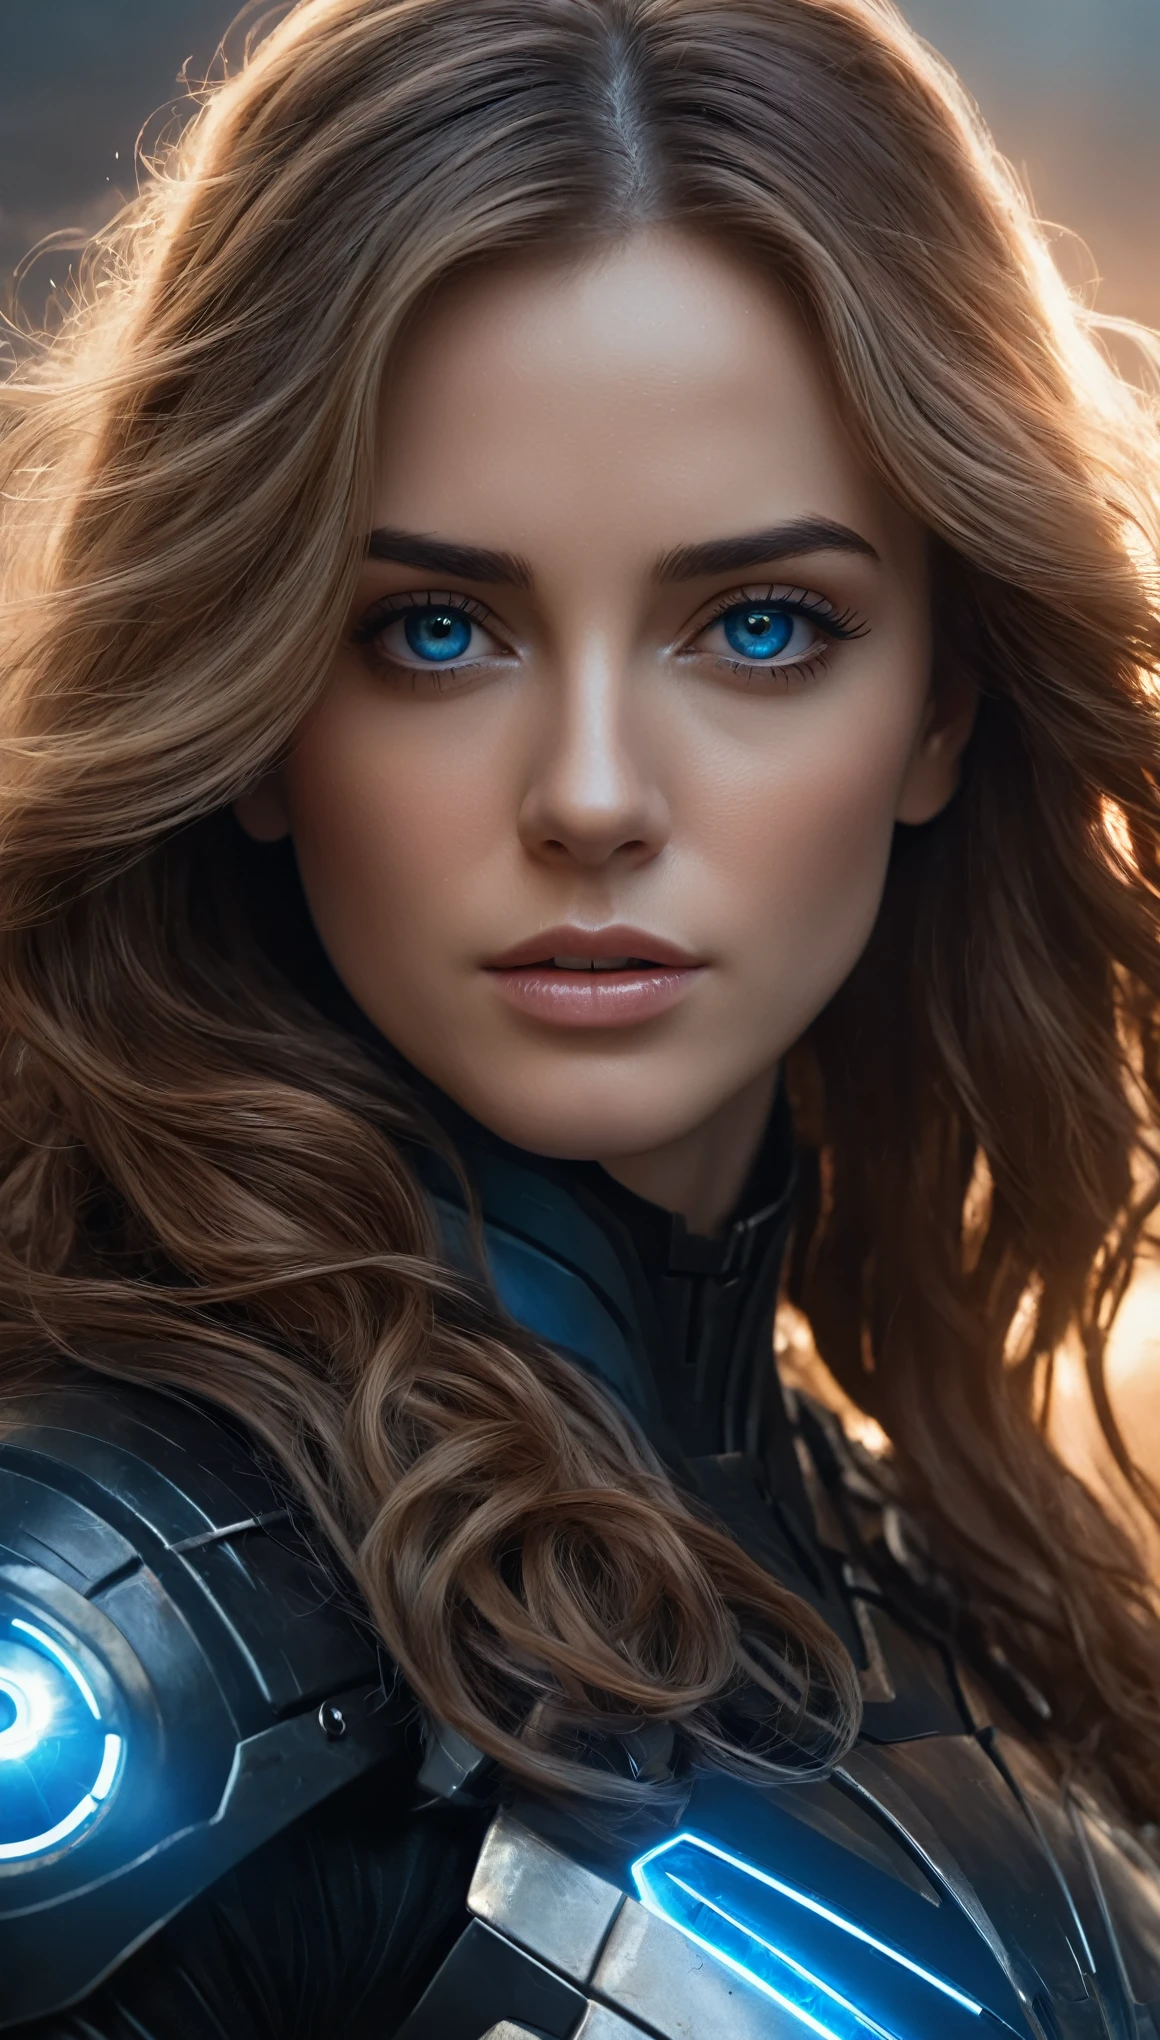 一個有著黑色大眼睛的女人的詳細肖像, 光環, 淺棕色長捲髮, 身穿黑藍科幻鎧甲, 在科幻風格中, (最好的品質,4k,8K,高解析度,傑作:1.2),超詳細,(實際的,photo實際的,photo-實際的:1.37),細緻的對稱臉, 電影燈光, 史詩般的科幻氛圍, 戰爭場面, 概念藝術, 喜怒無常的顏色